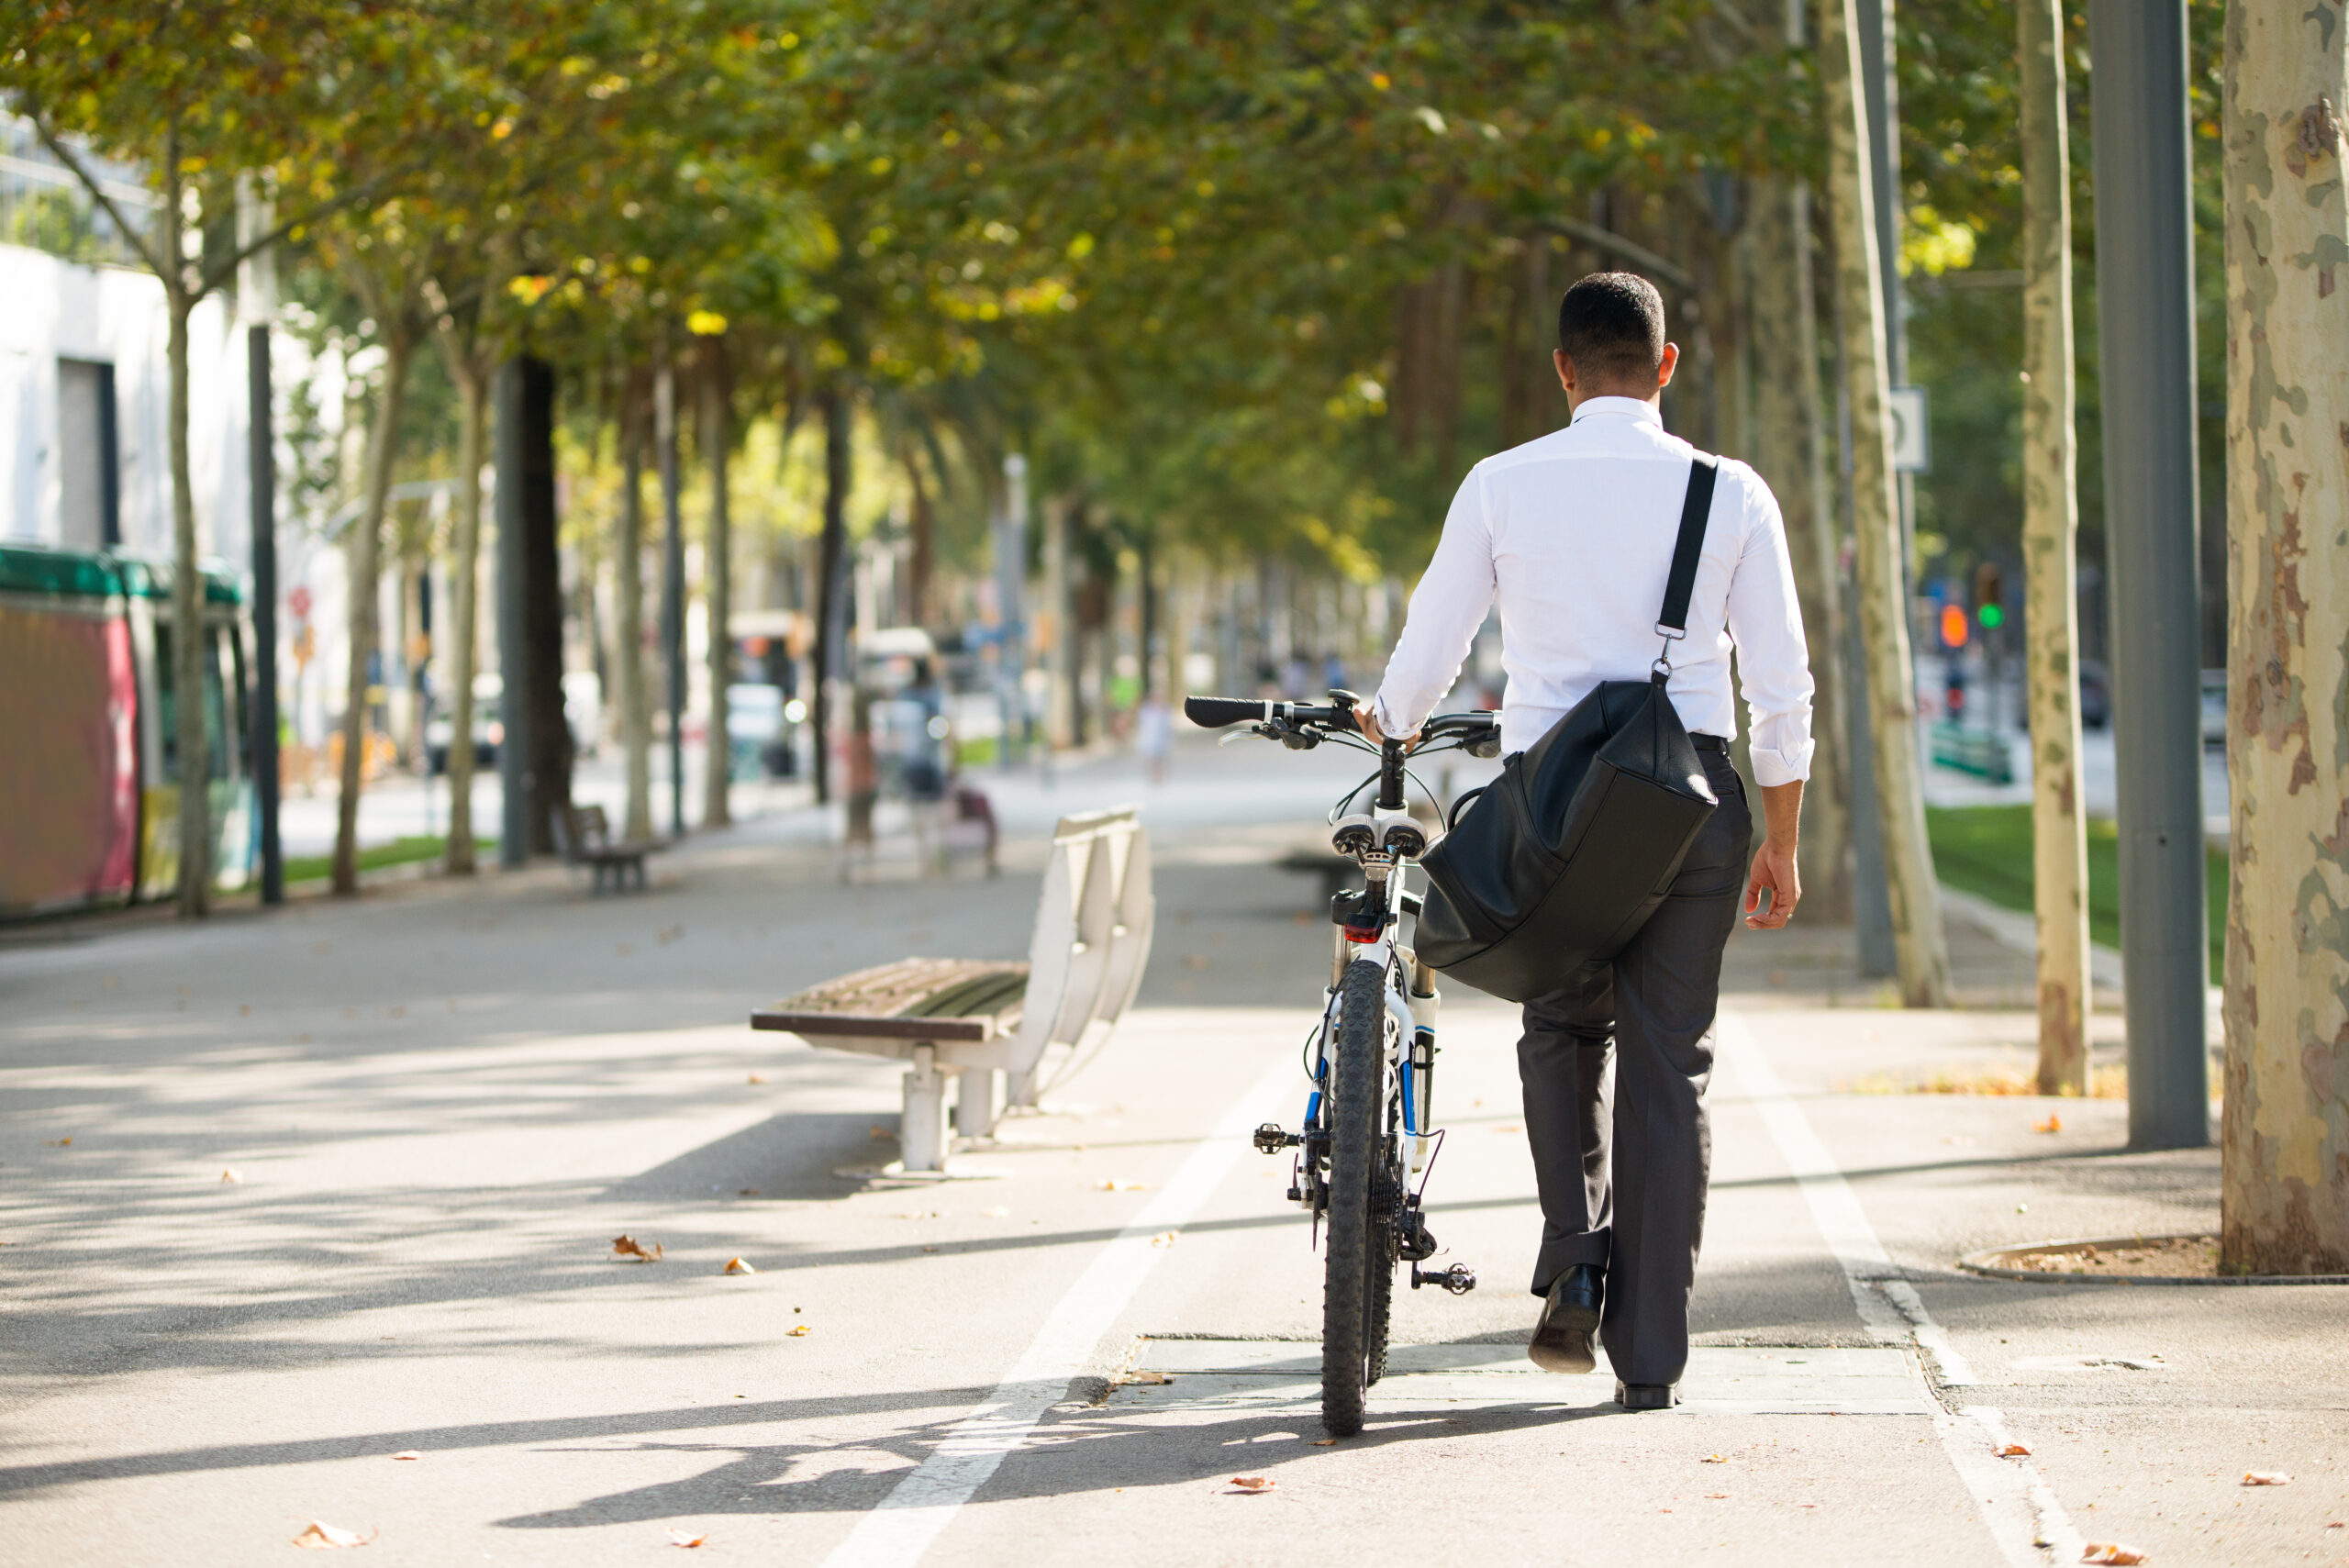 По дороге на работу получила. Люди на велосипедах в городе. Бизнесмен на велосипеде. Человек ведет велосипед. Прогулка на велосипеде.